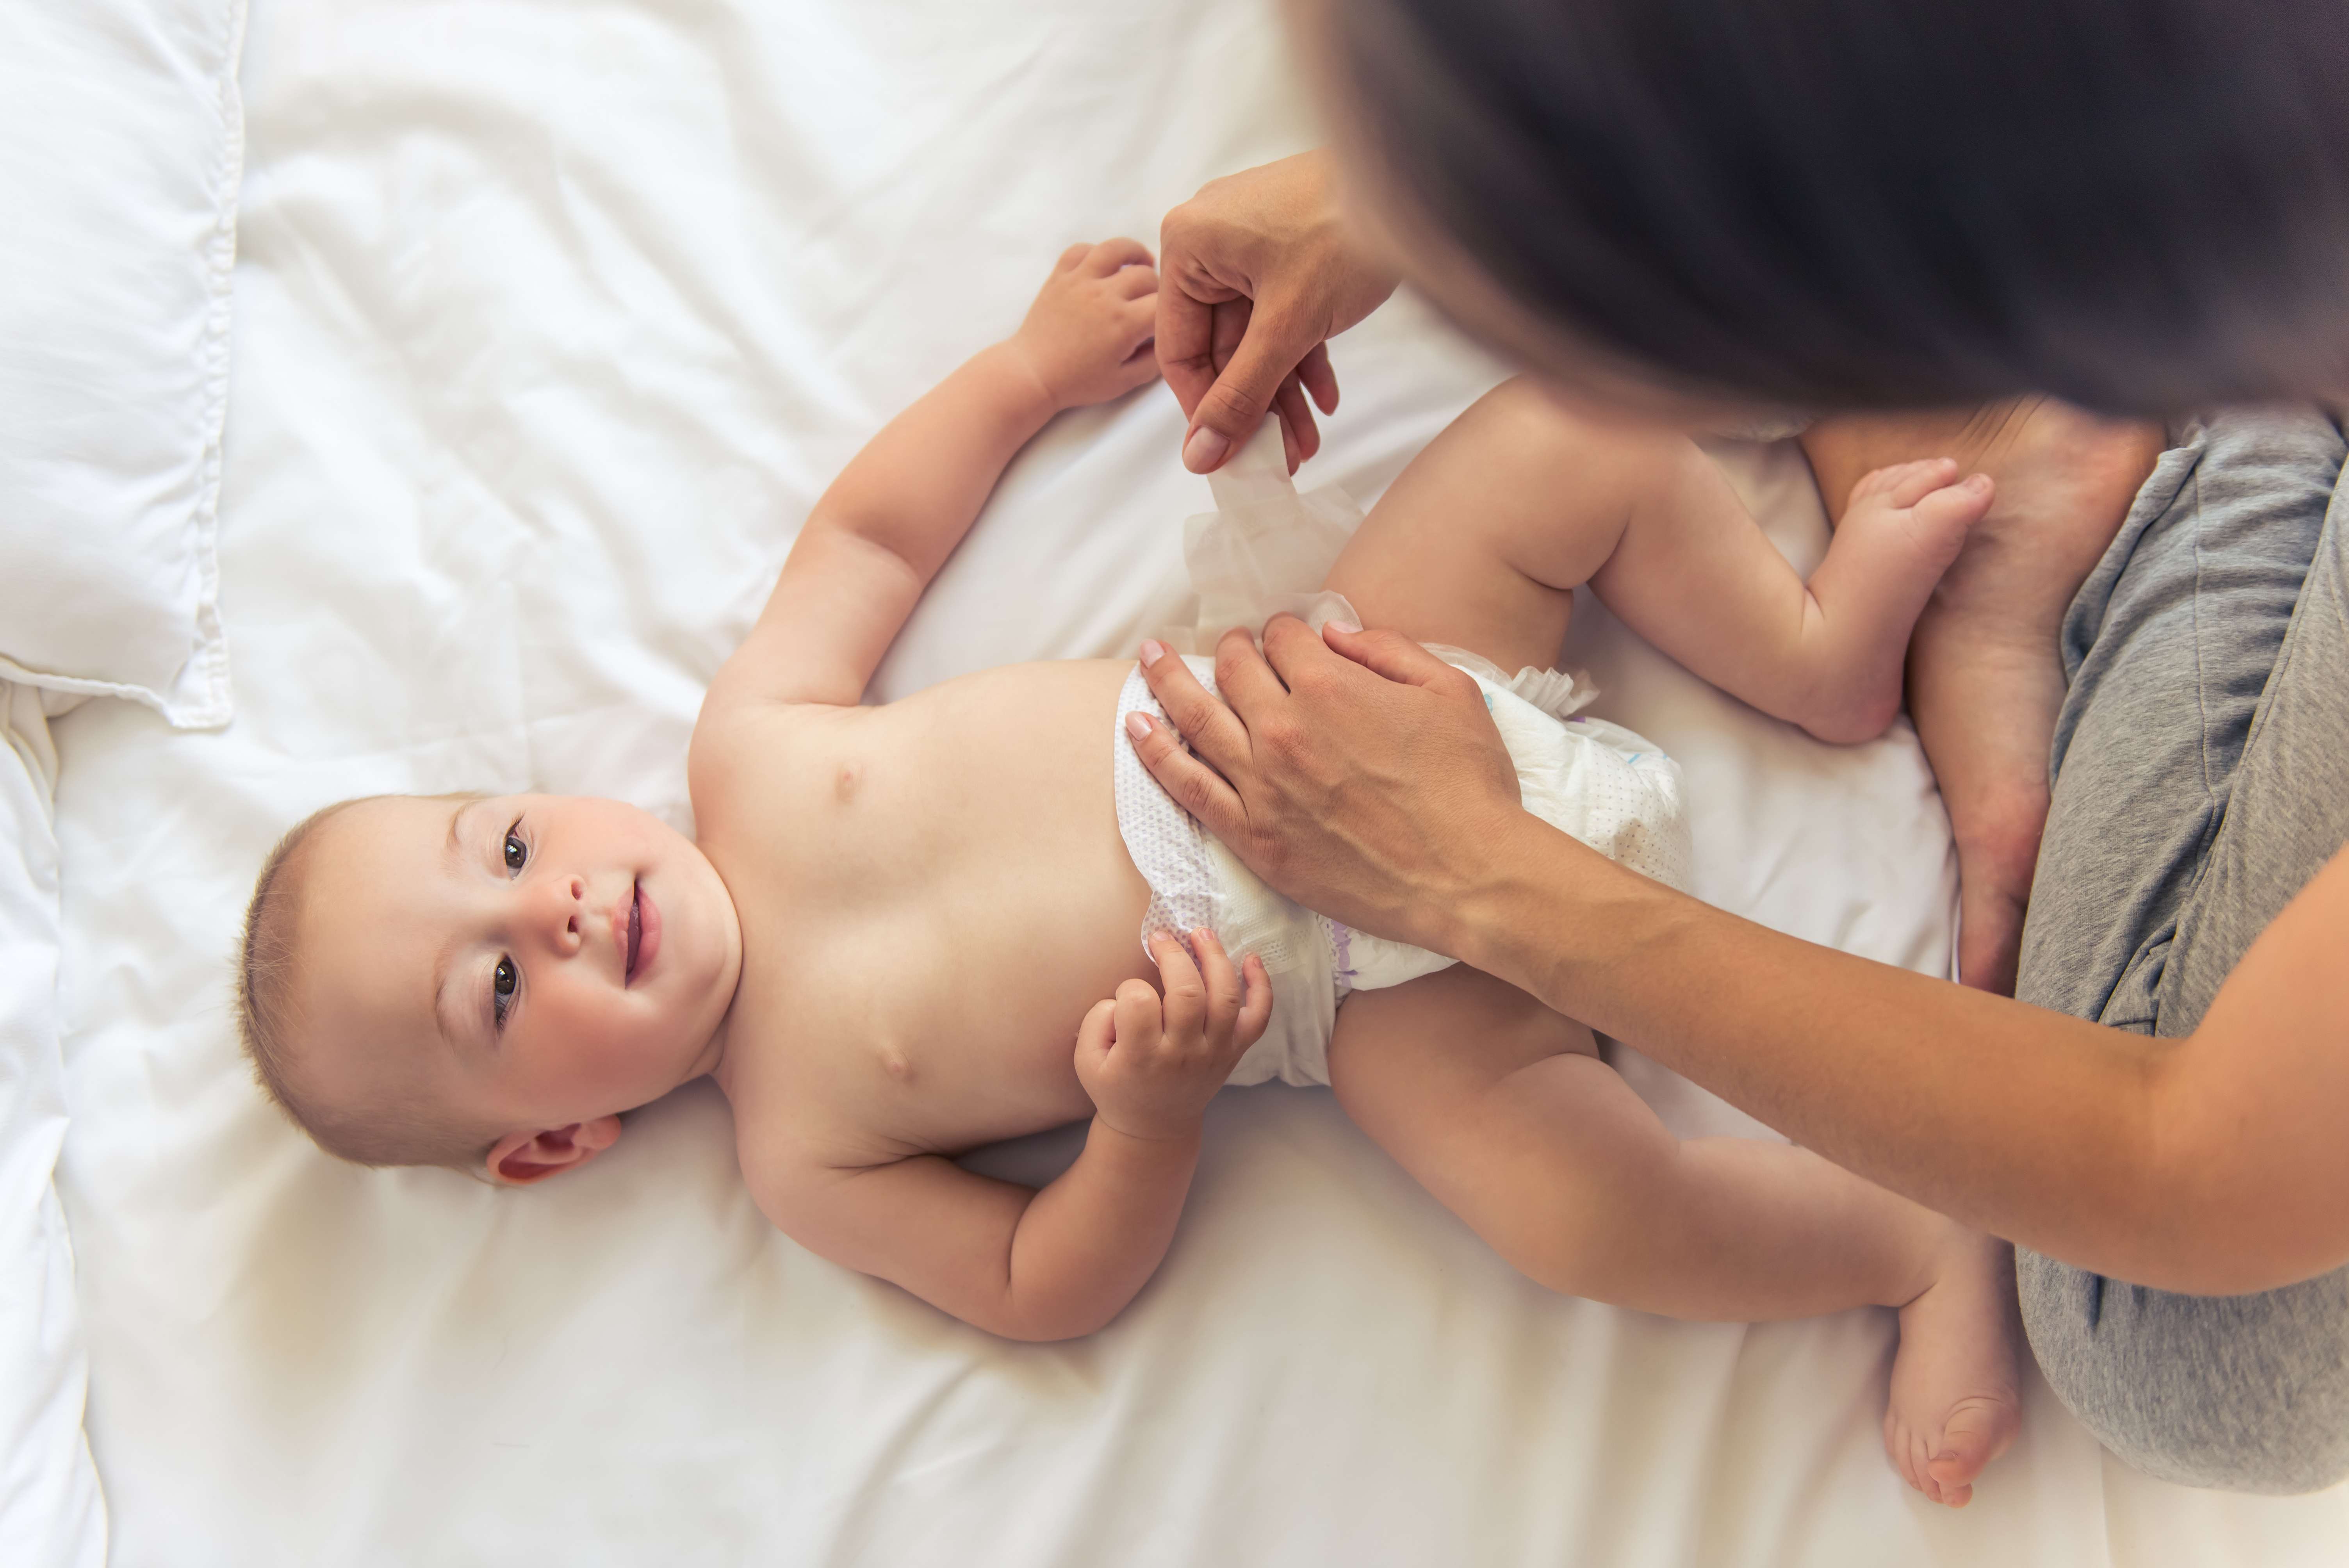 Una mujer cambiando el pañal a un bebé. | Foto: Shutterstock